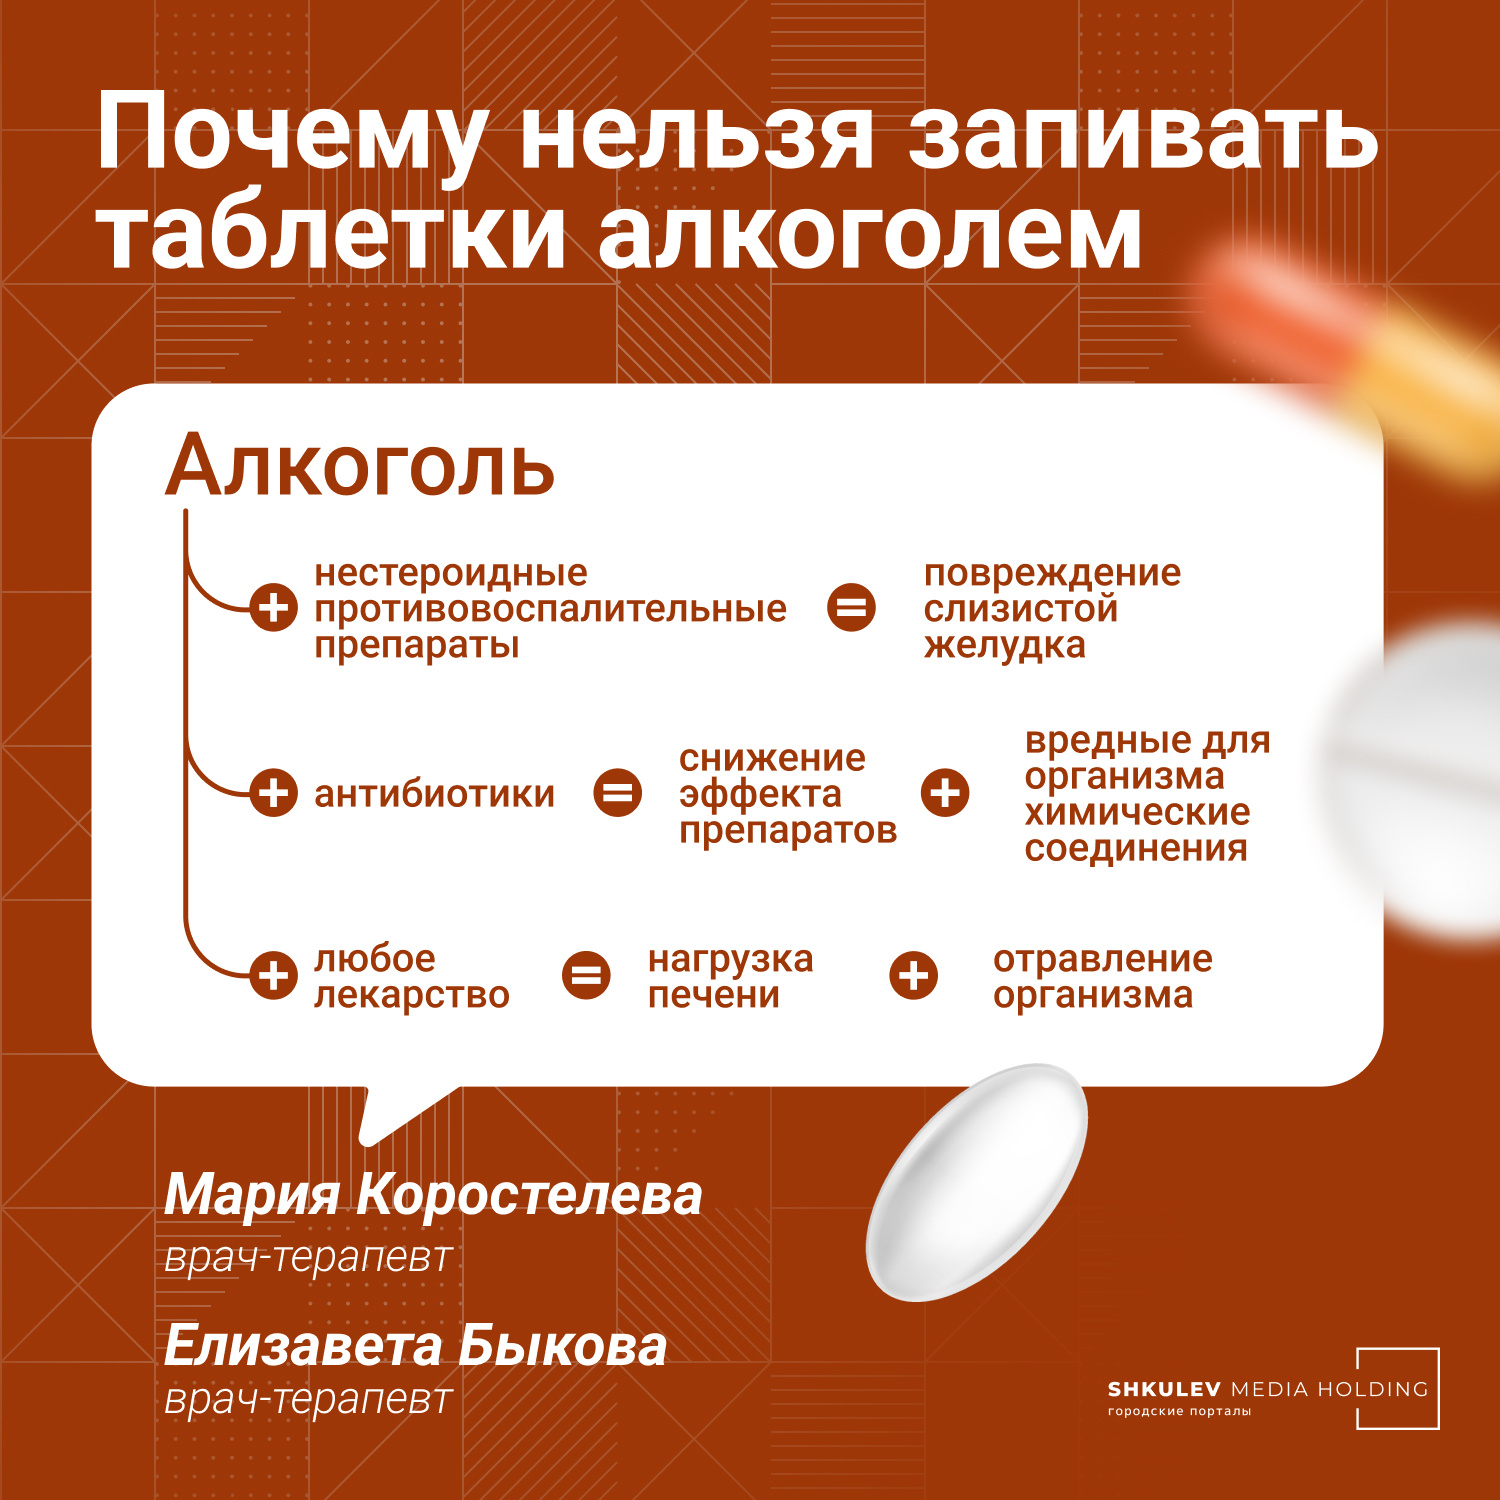 Общие рекомендации по запиванию лекарств